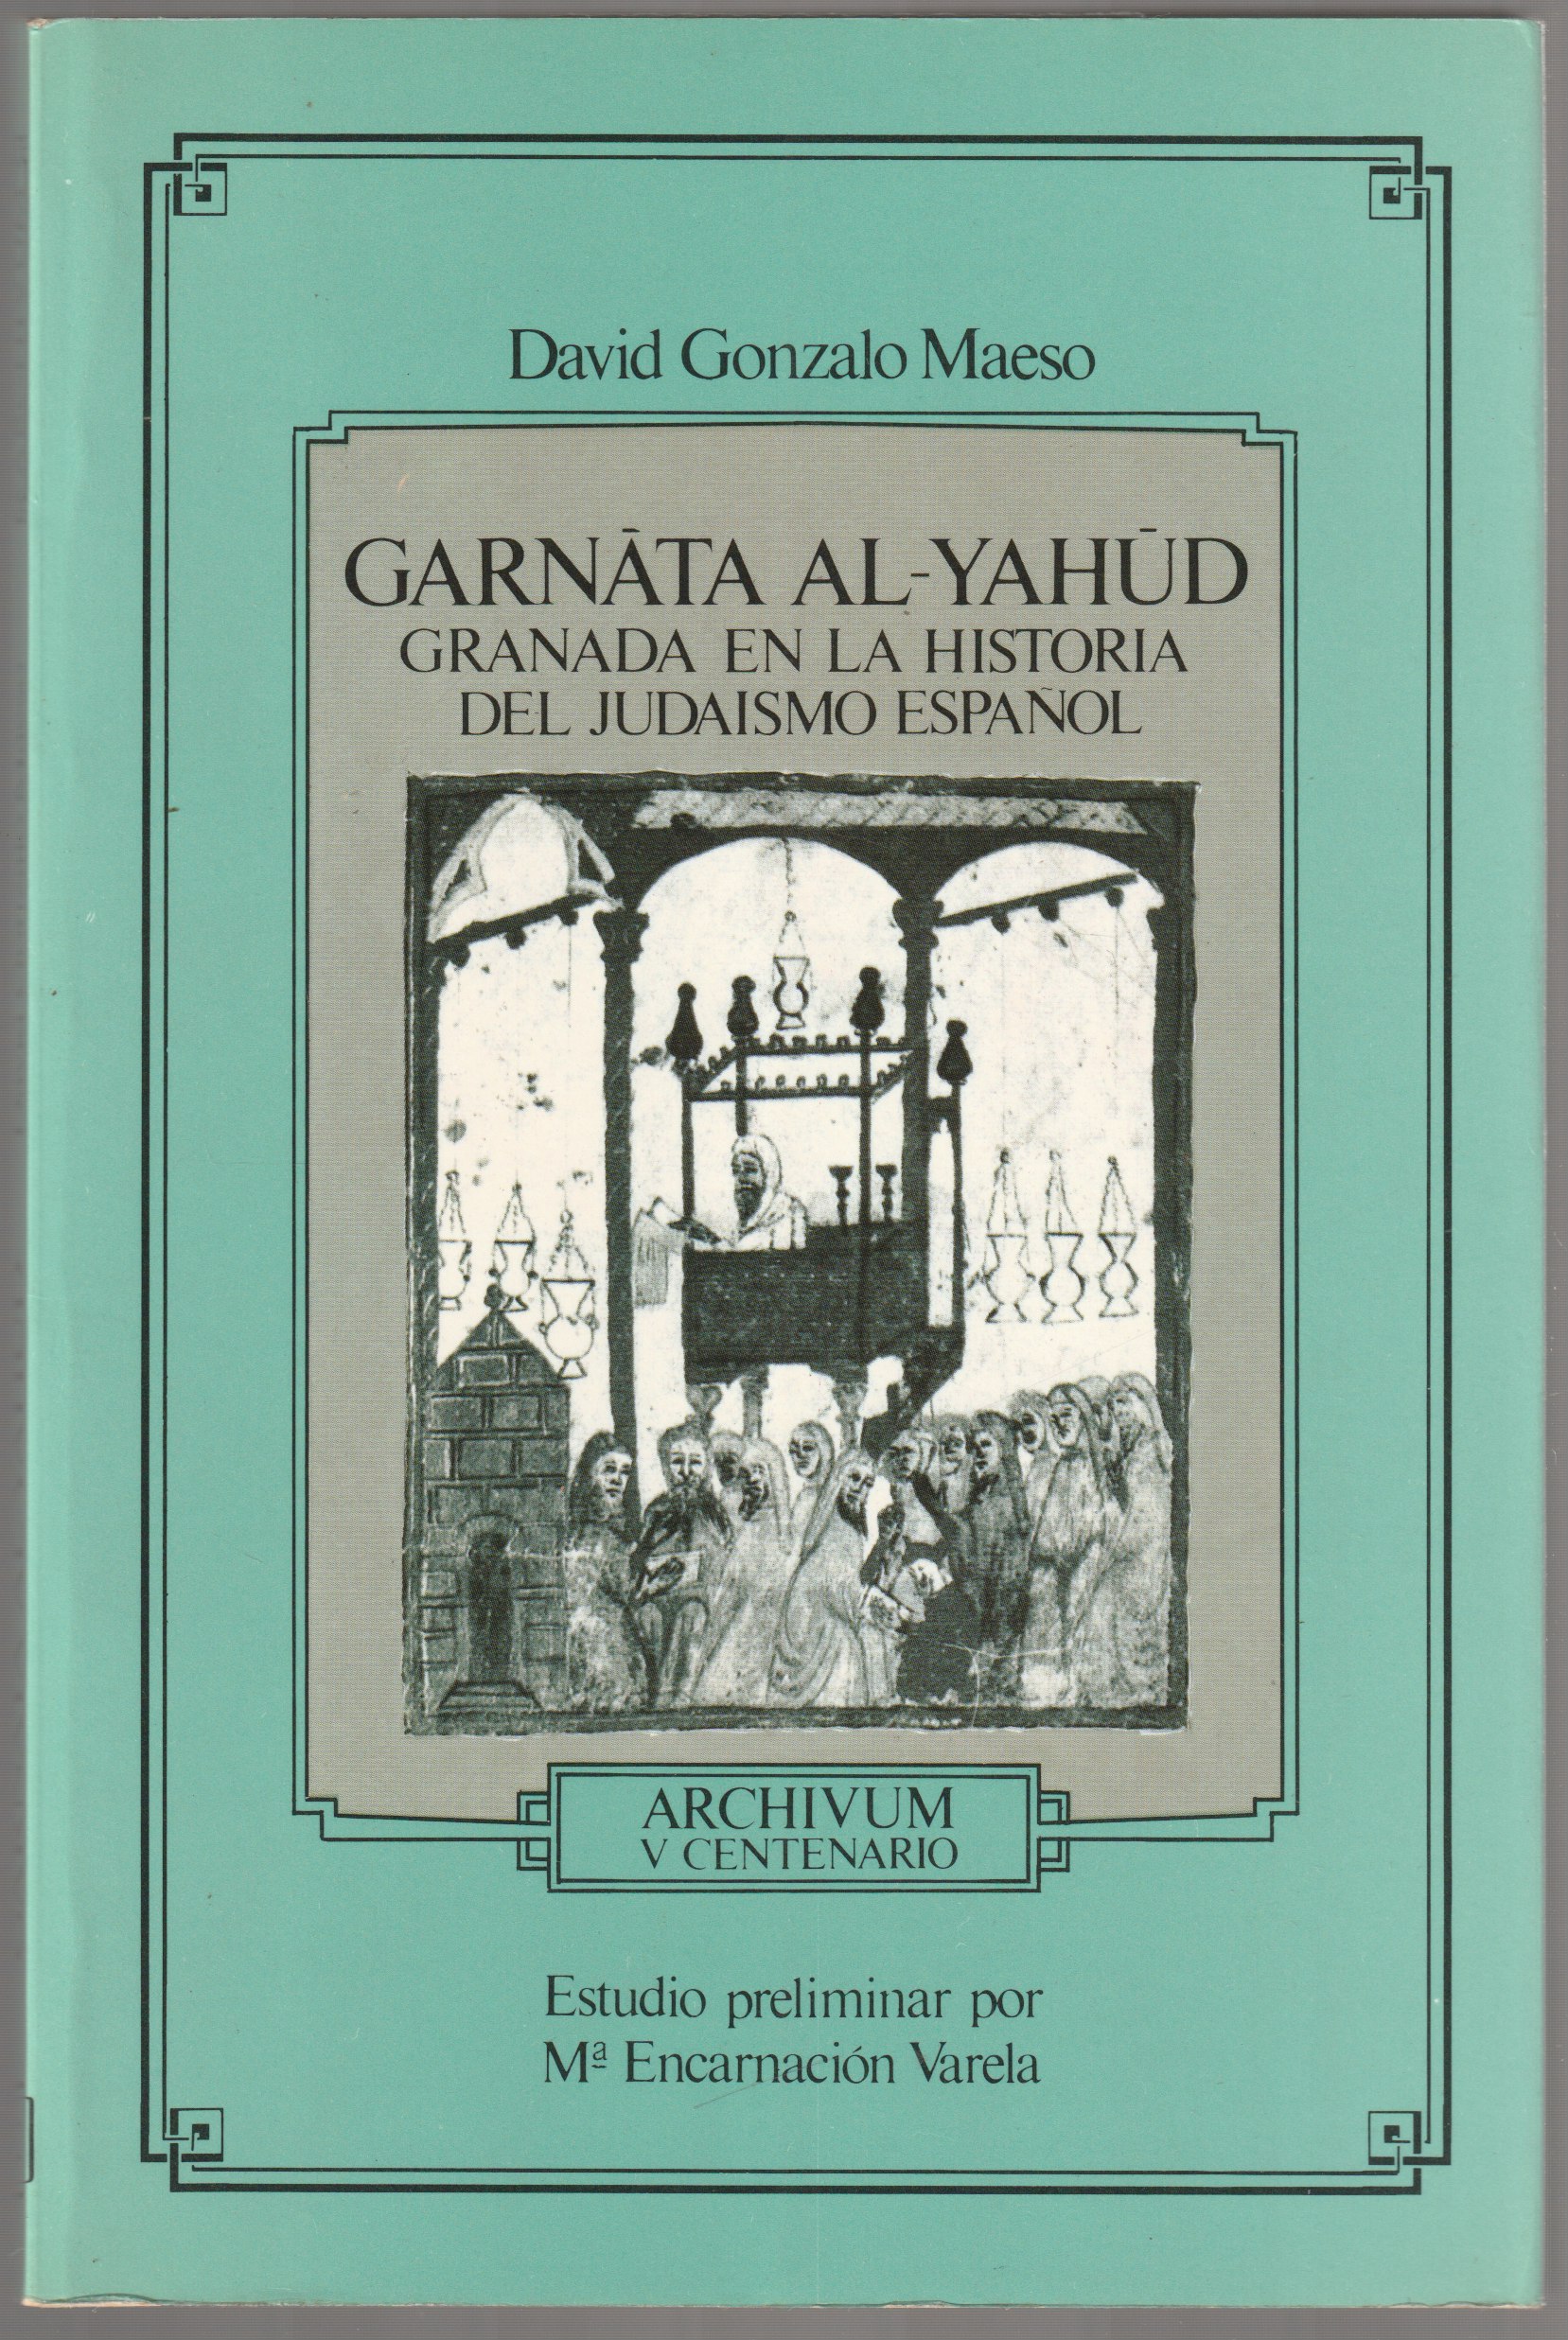 Garnata al-yahud : Granada en la historia del judaismo espanol.